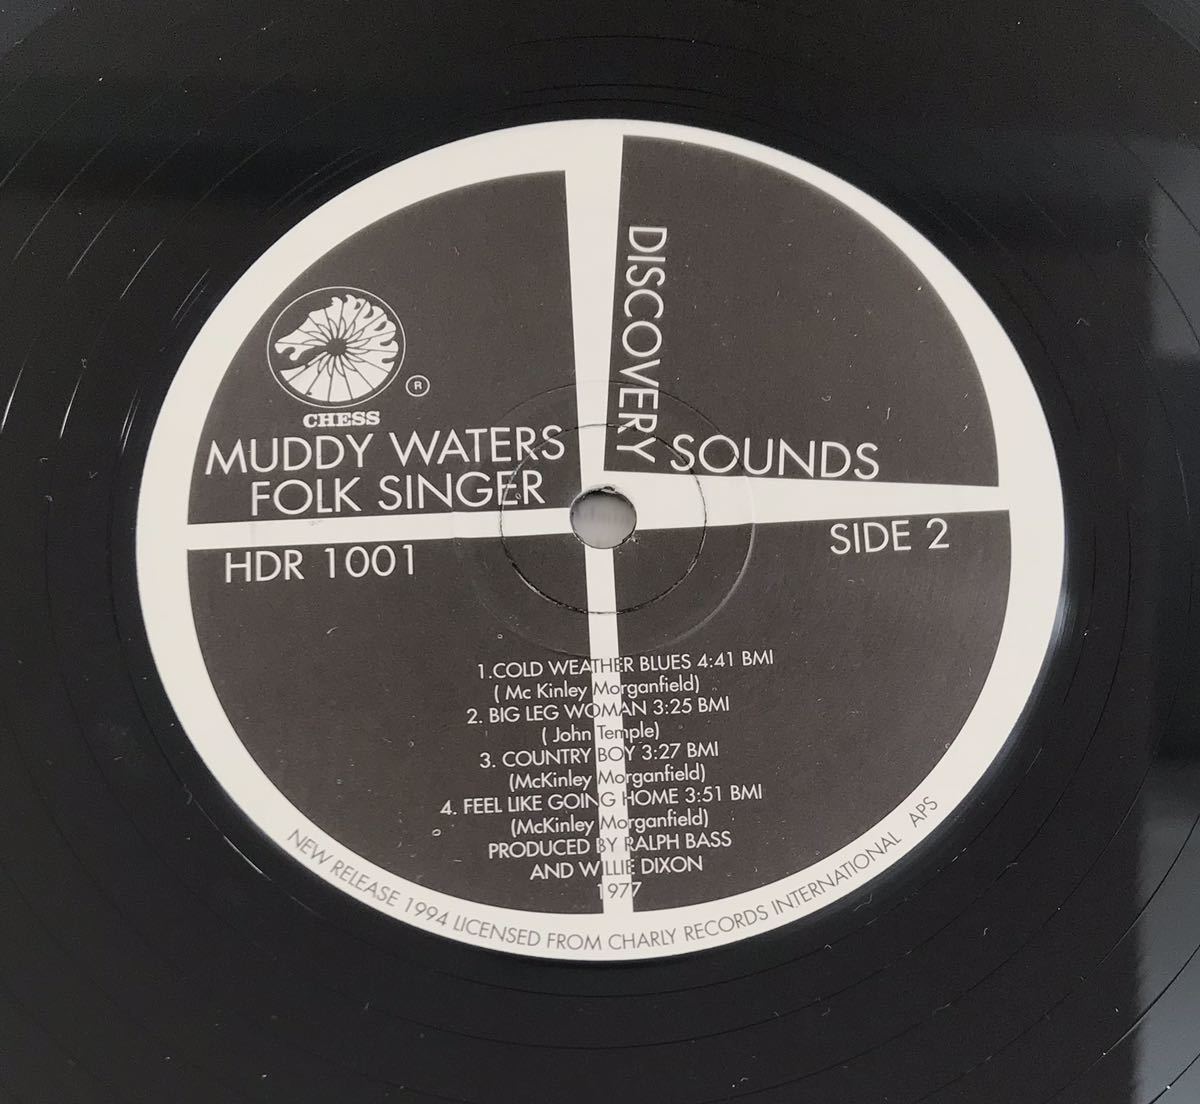 ■MUDDY WATERS ■マディー・ウォーターズ ■Folk Singer / 1LP / Chess Records UK / チェス / UK盤 / ブルース名盤 / レコード / アナロ_画像8